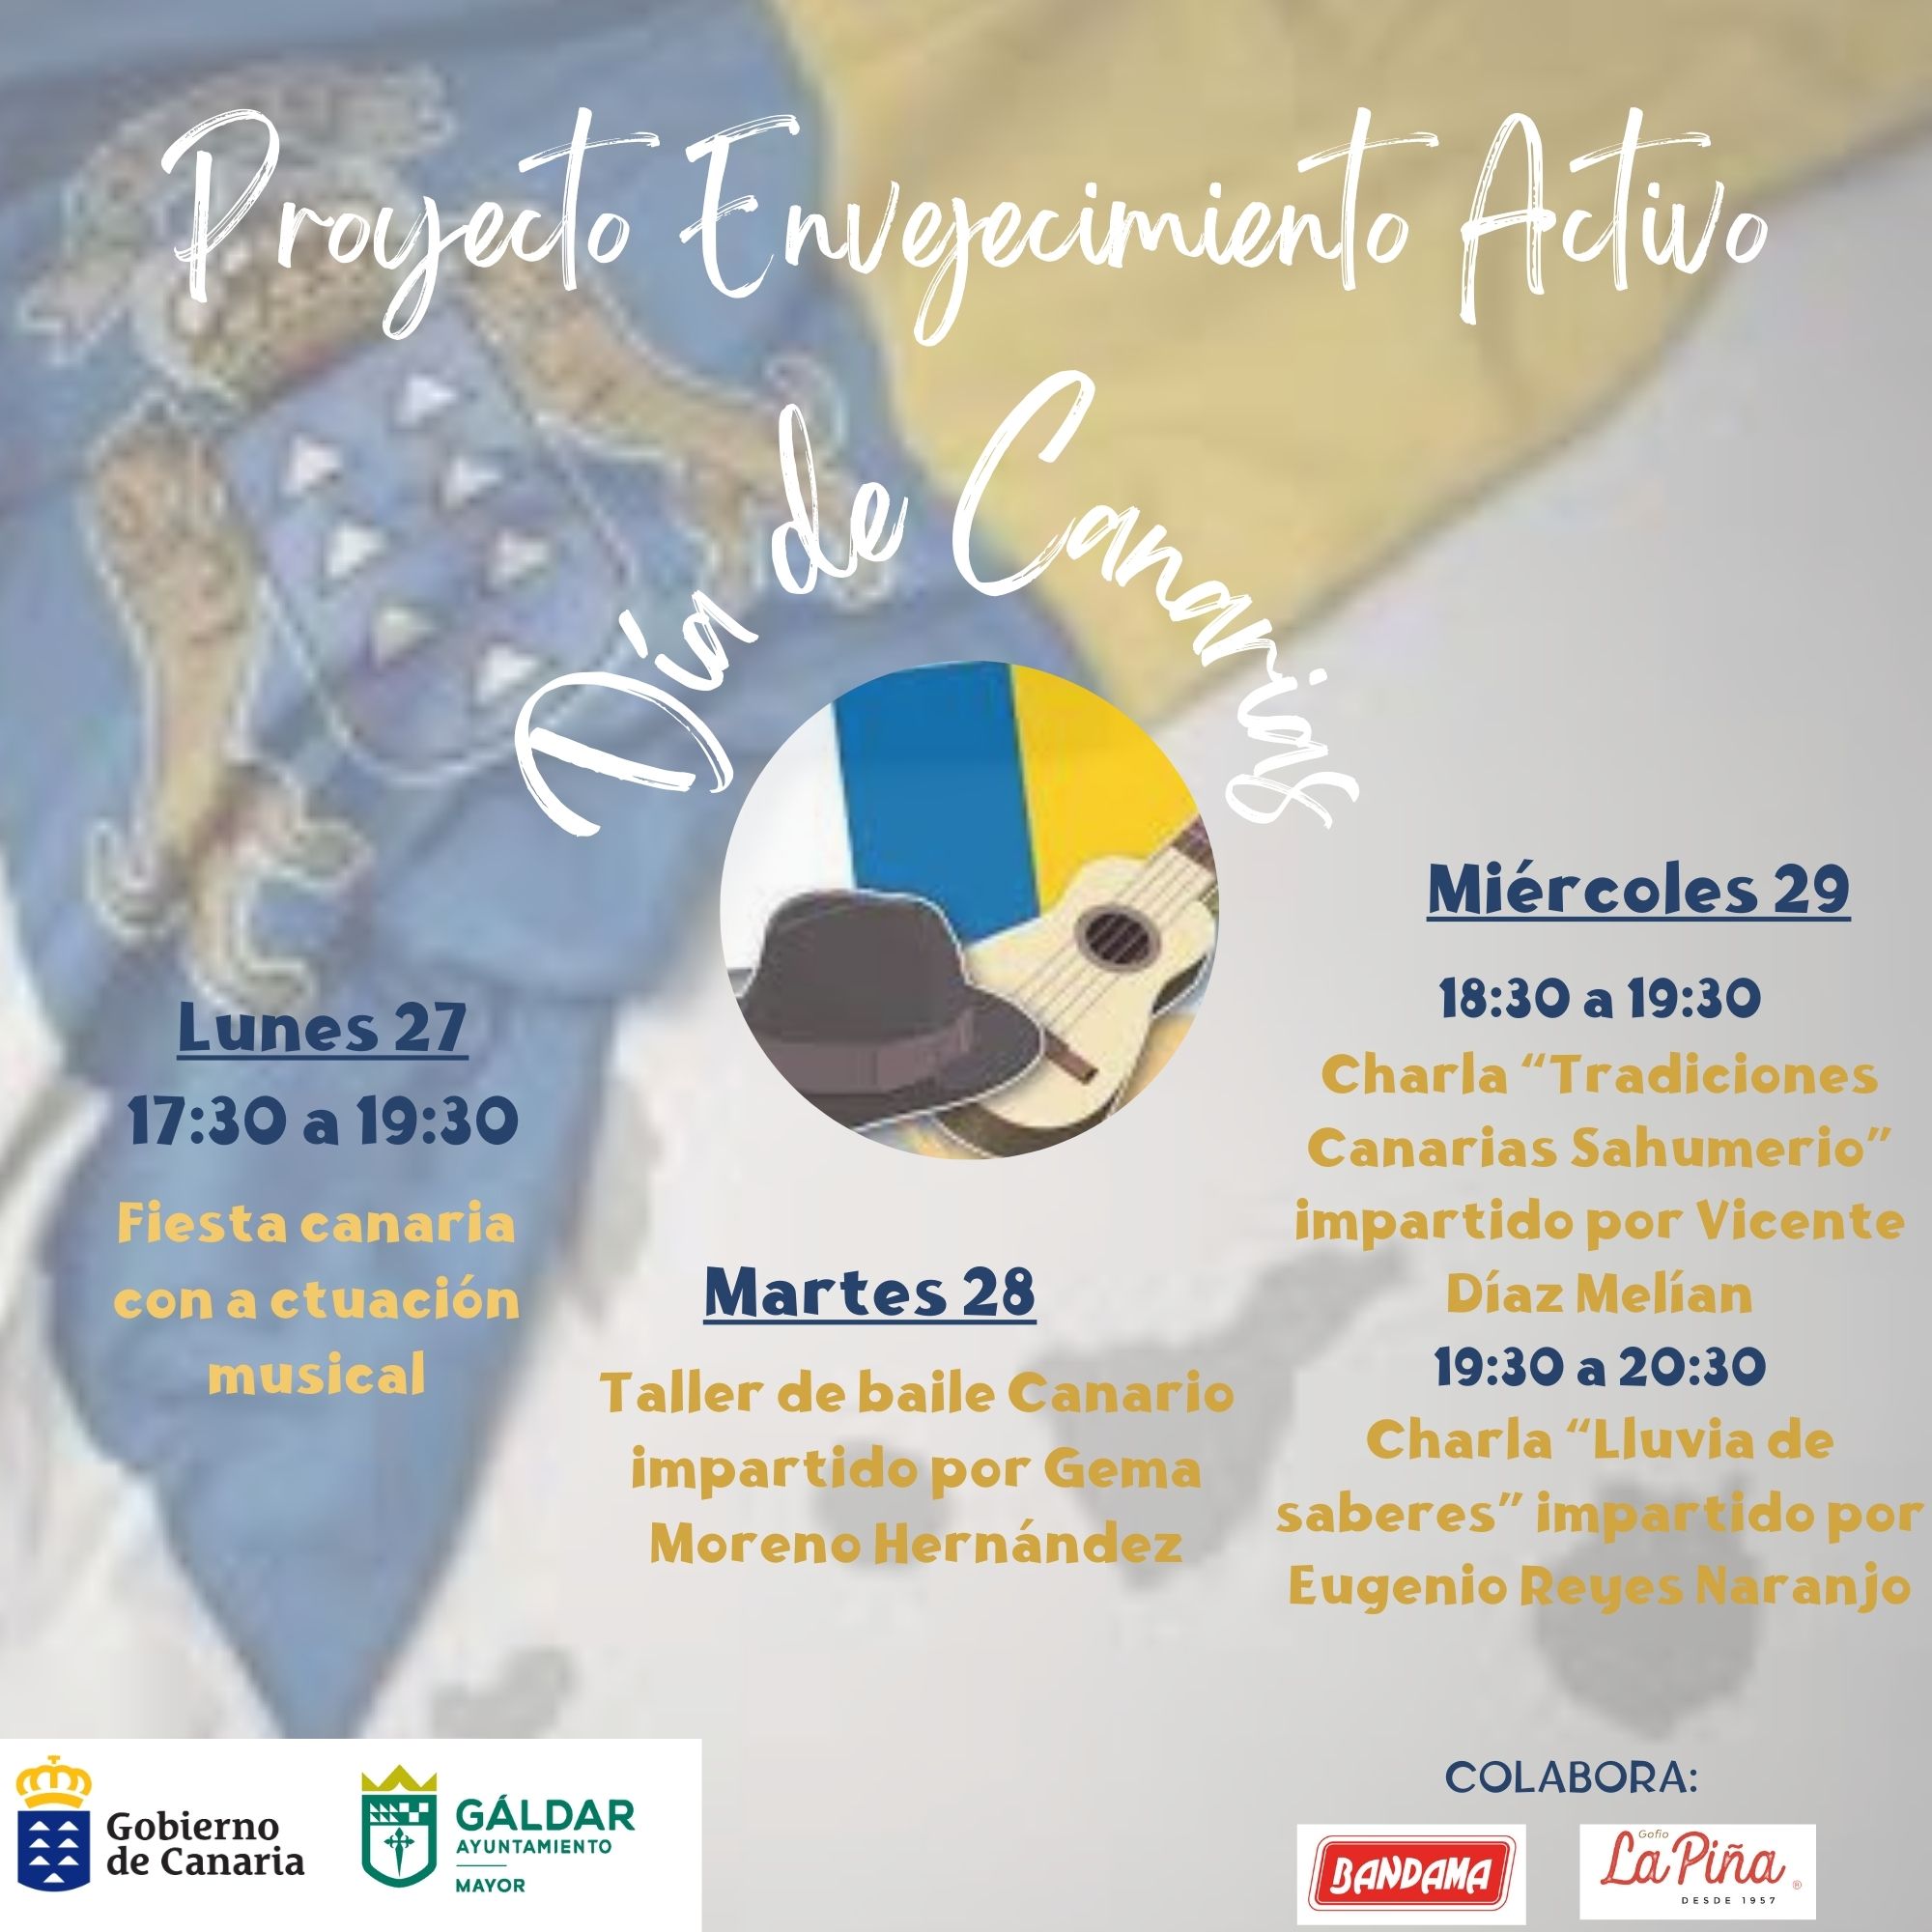 El proyecto ‘Envejecimiento Activo’ organiza varias actividades en el Club del Mayor de Gáldar por el Día de Canarias